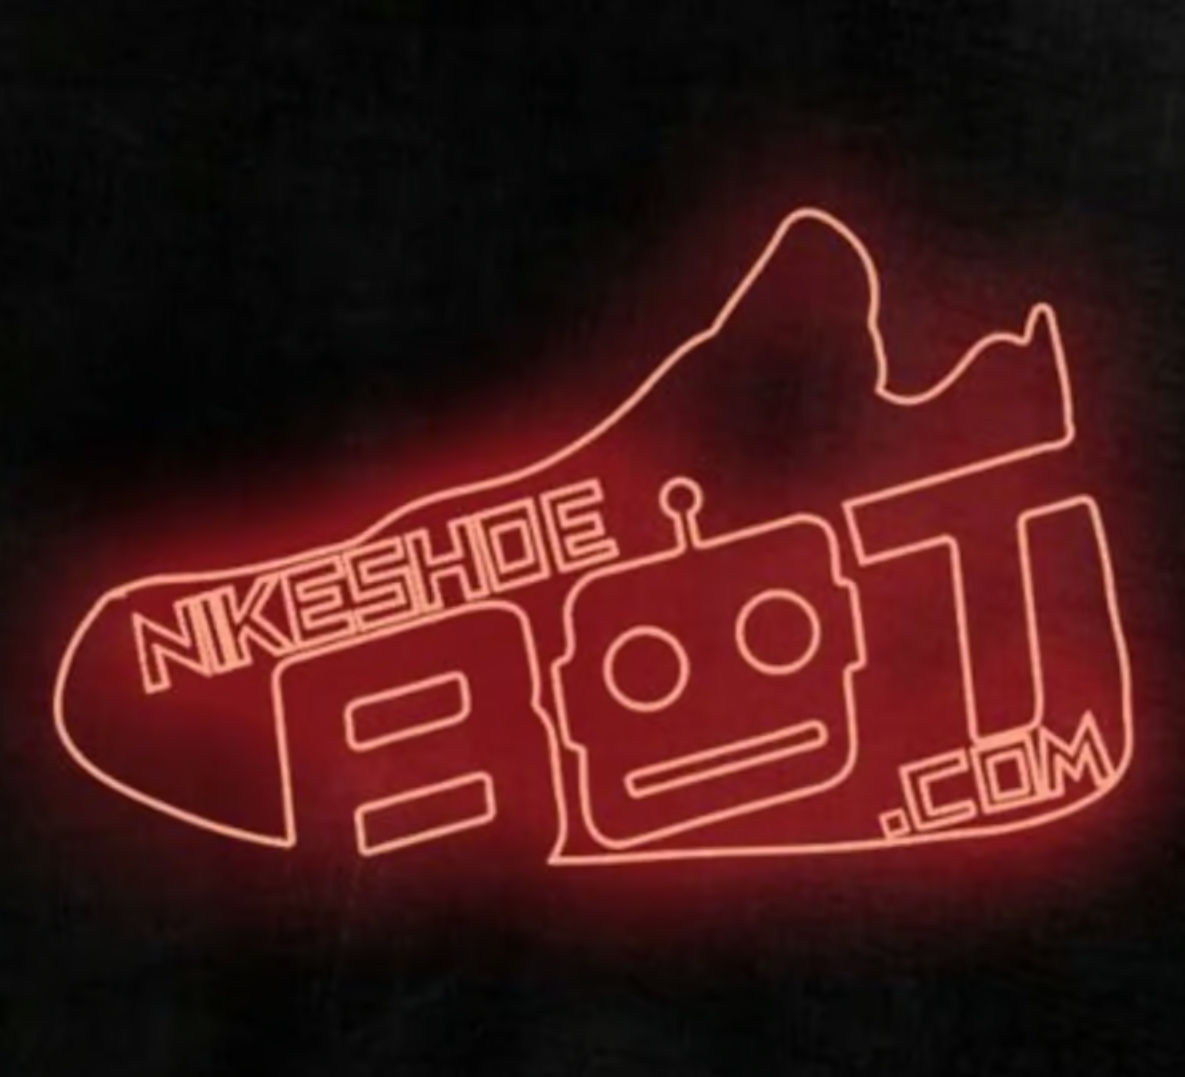 NikeShoeBot